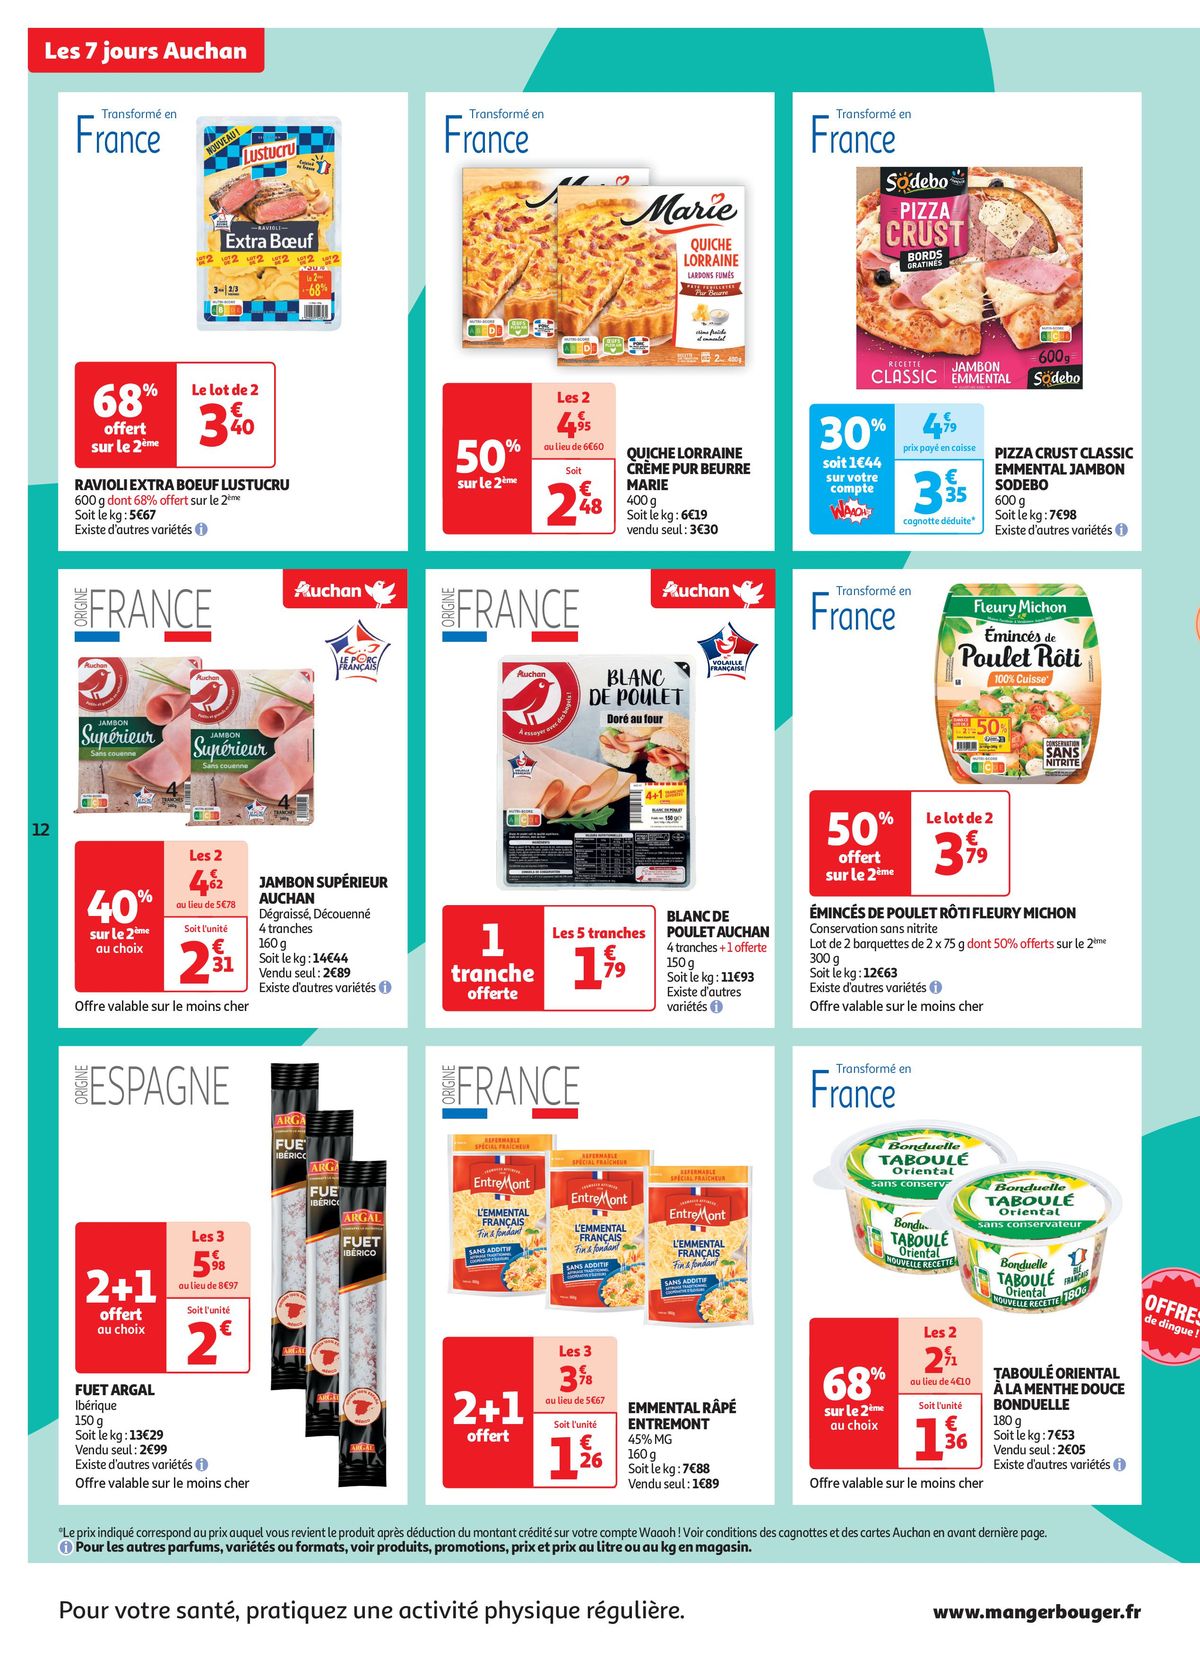 Catalogue C'est les 7 jours Auchan dans votre super !, page 00012